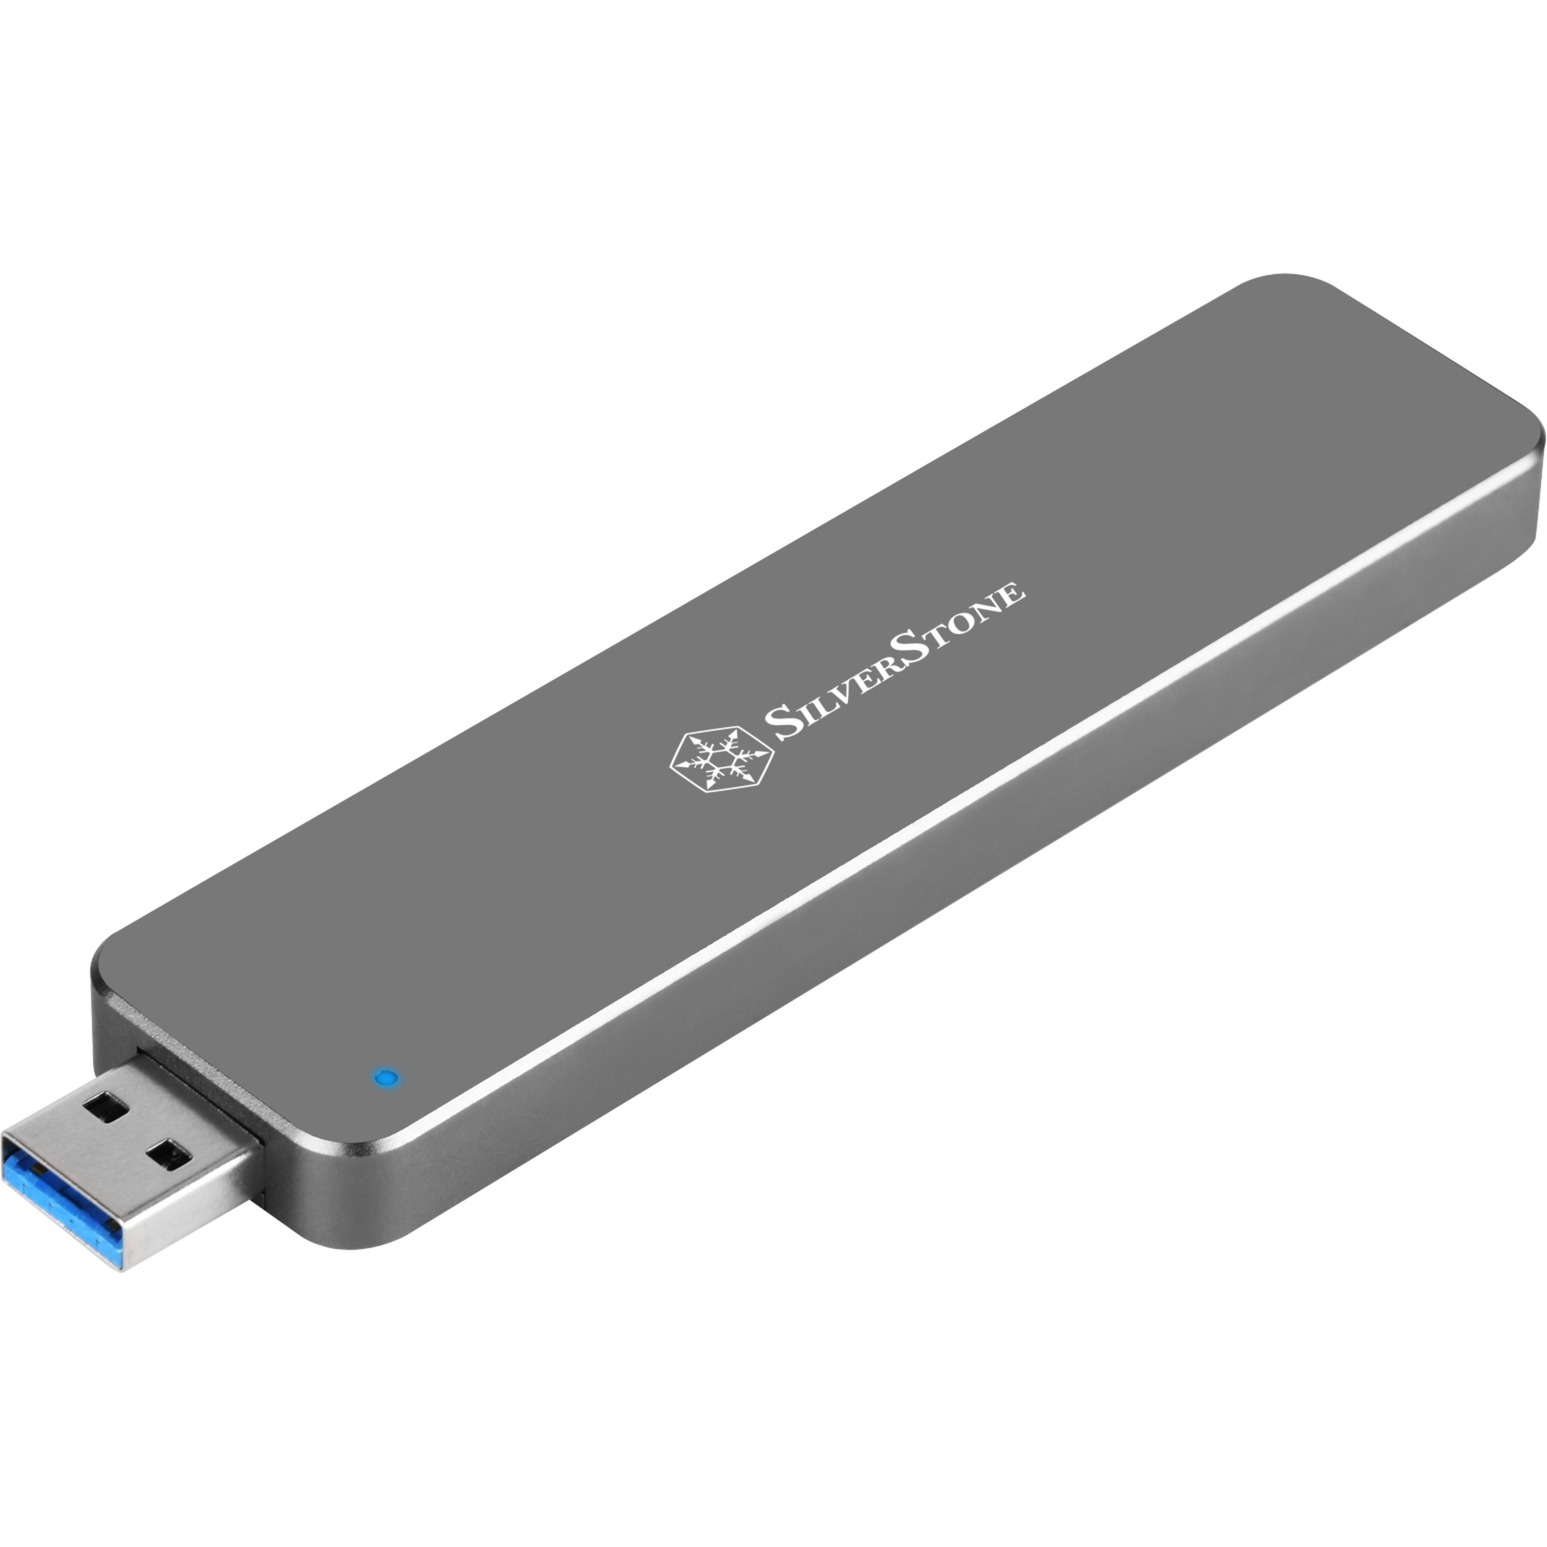 SST-MS09C USB 3.1, Laufwerksgehäuse von Silverstone